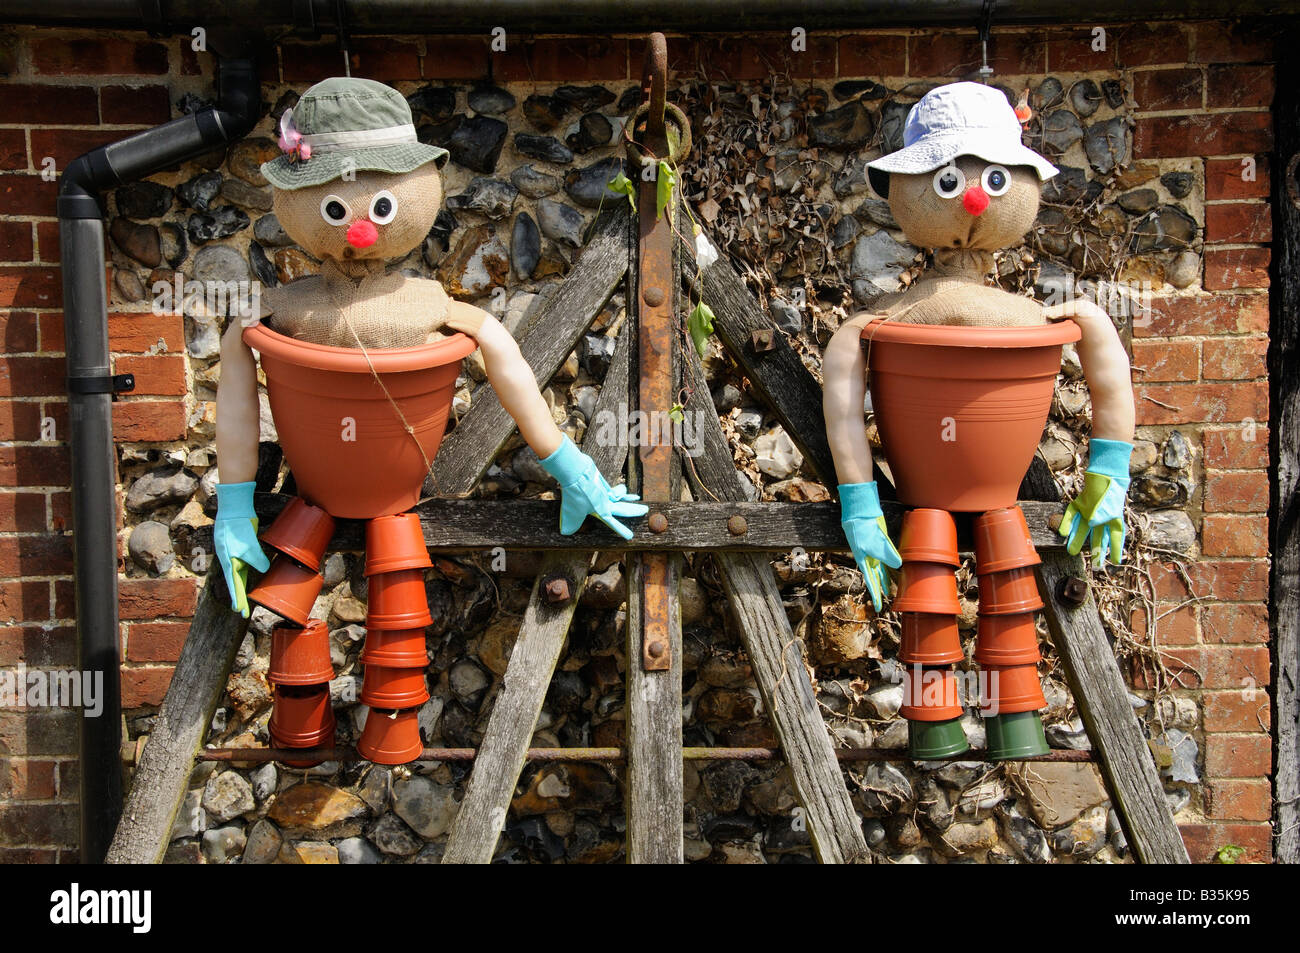 Los hombres característica cómica de maceta en un país jardín Foto de stock